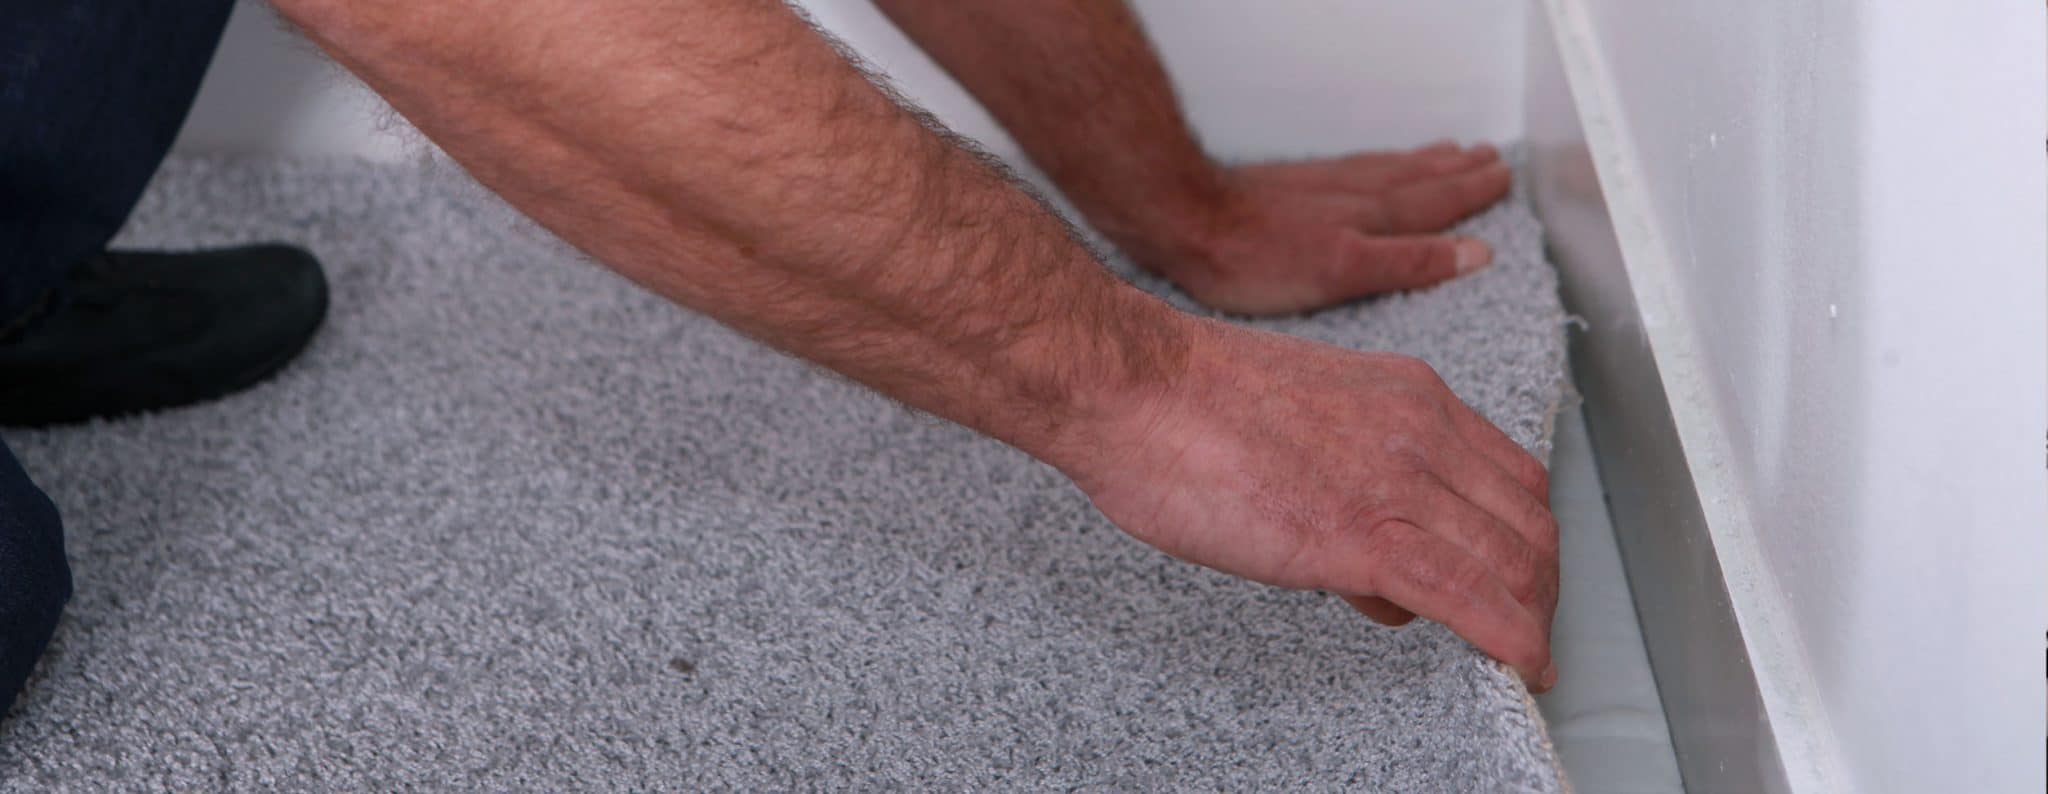 Man installing carpet